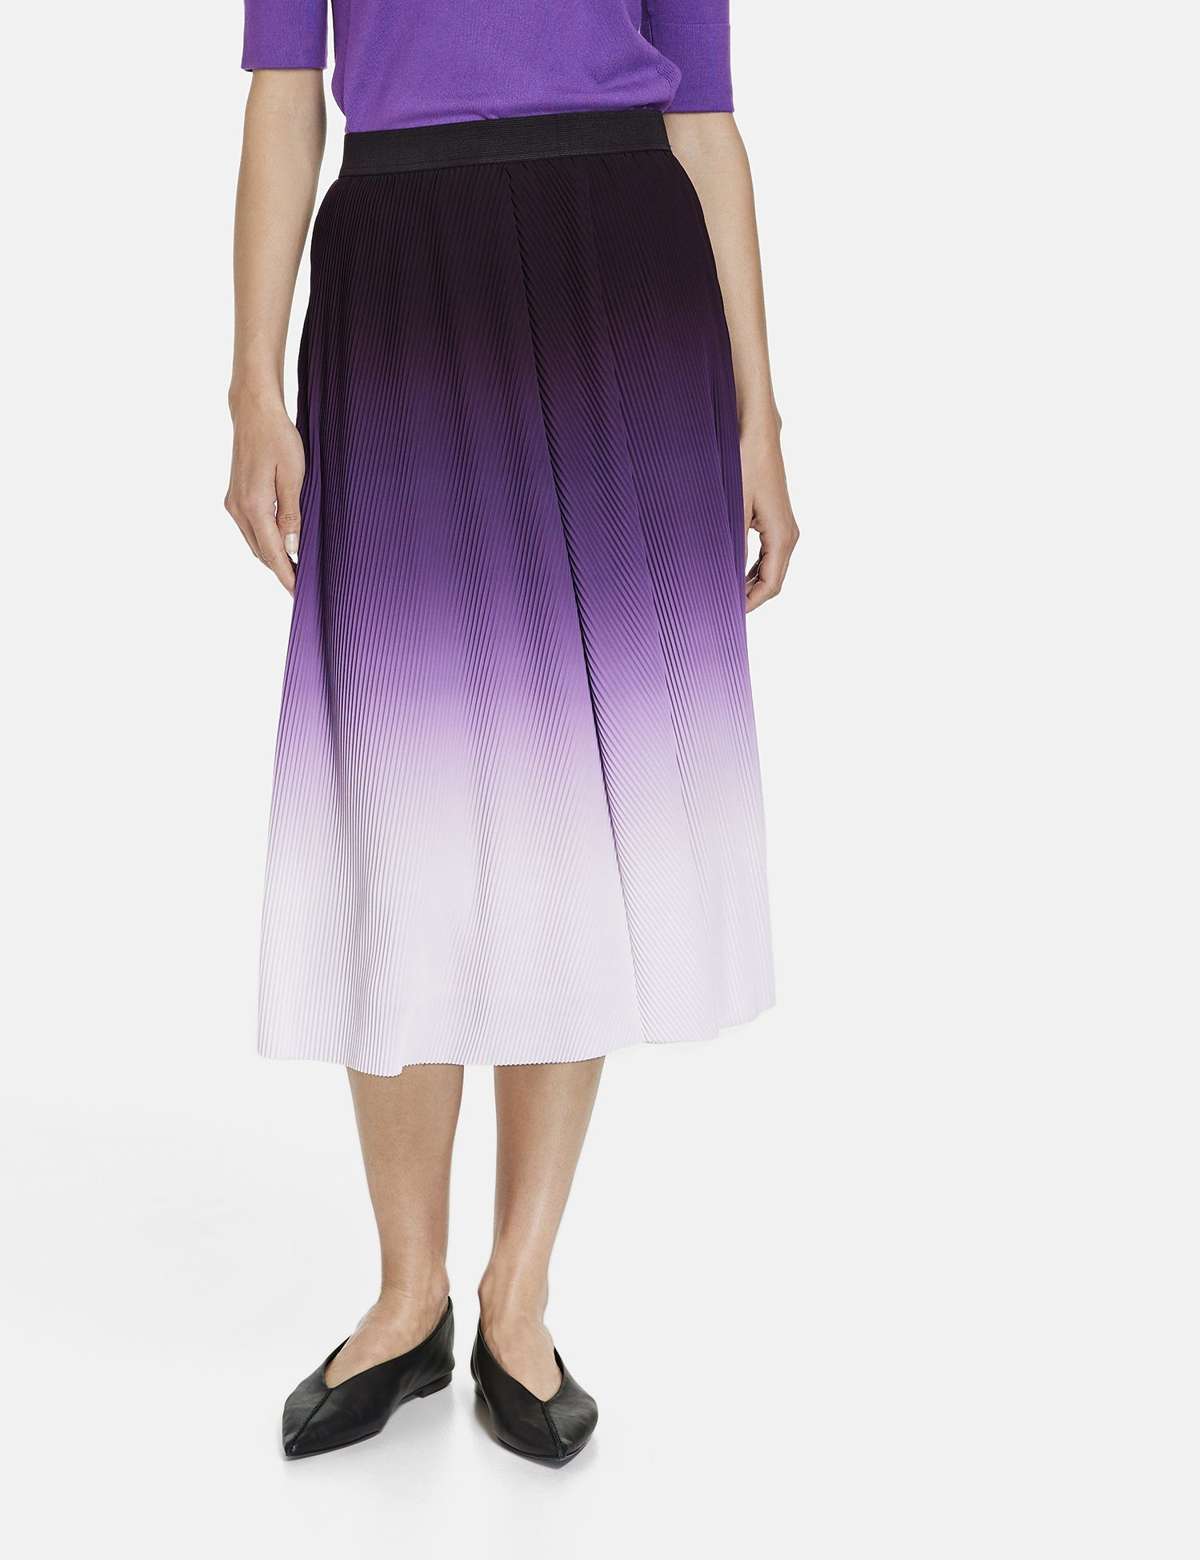 Юбка макси плиссированная юбка с цветовым градиентом и эластичным поясом